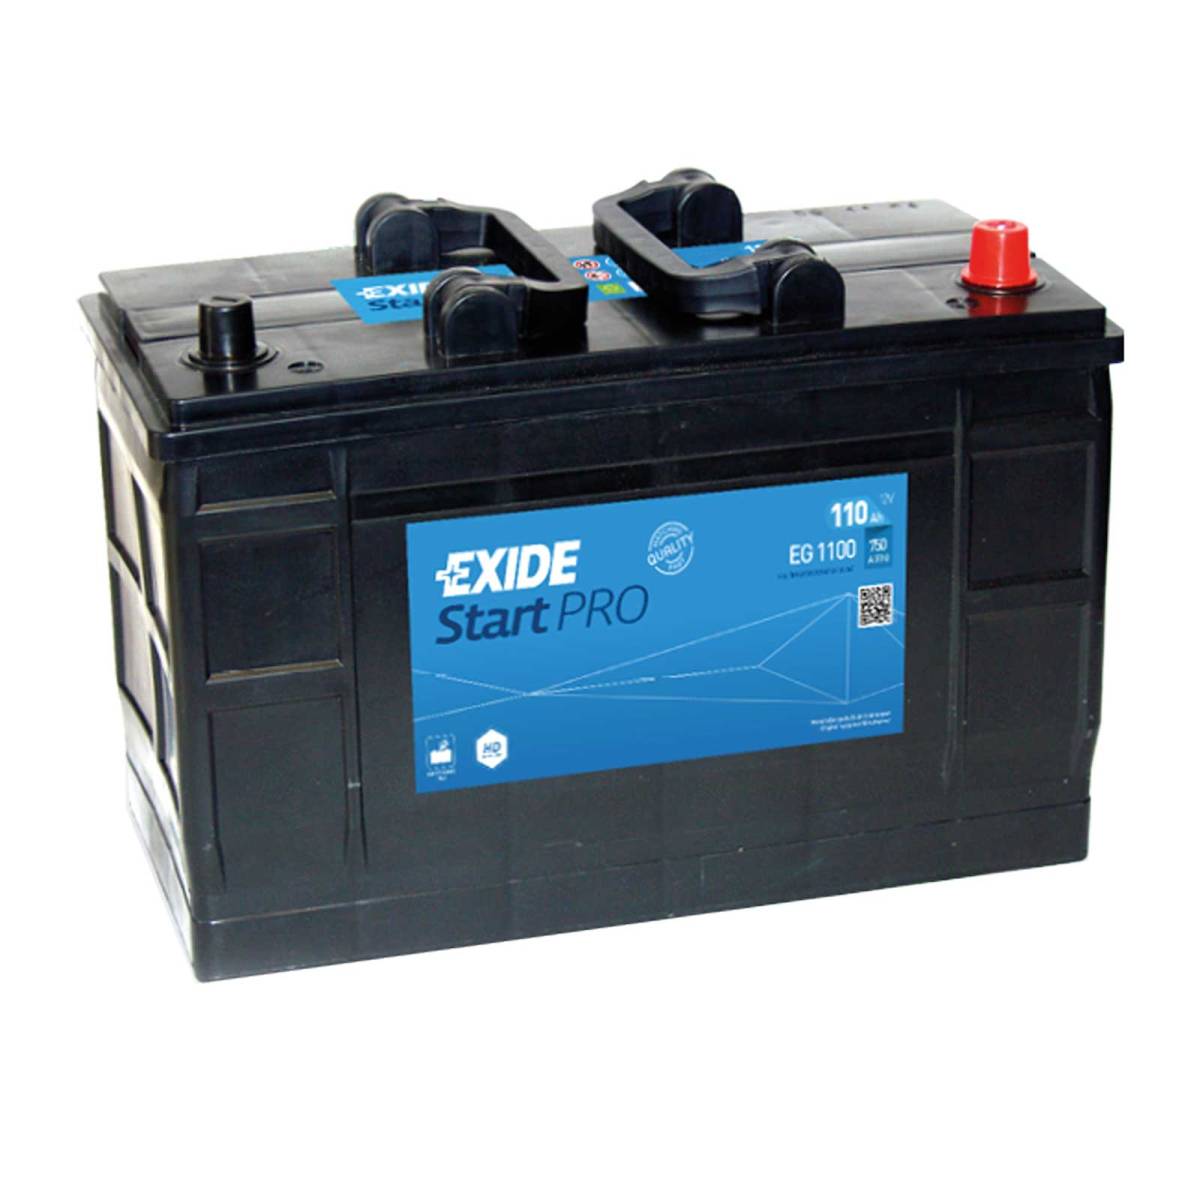 Exide EG1100 Start Pro 12V 110Ah 720A Truck Battery